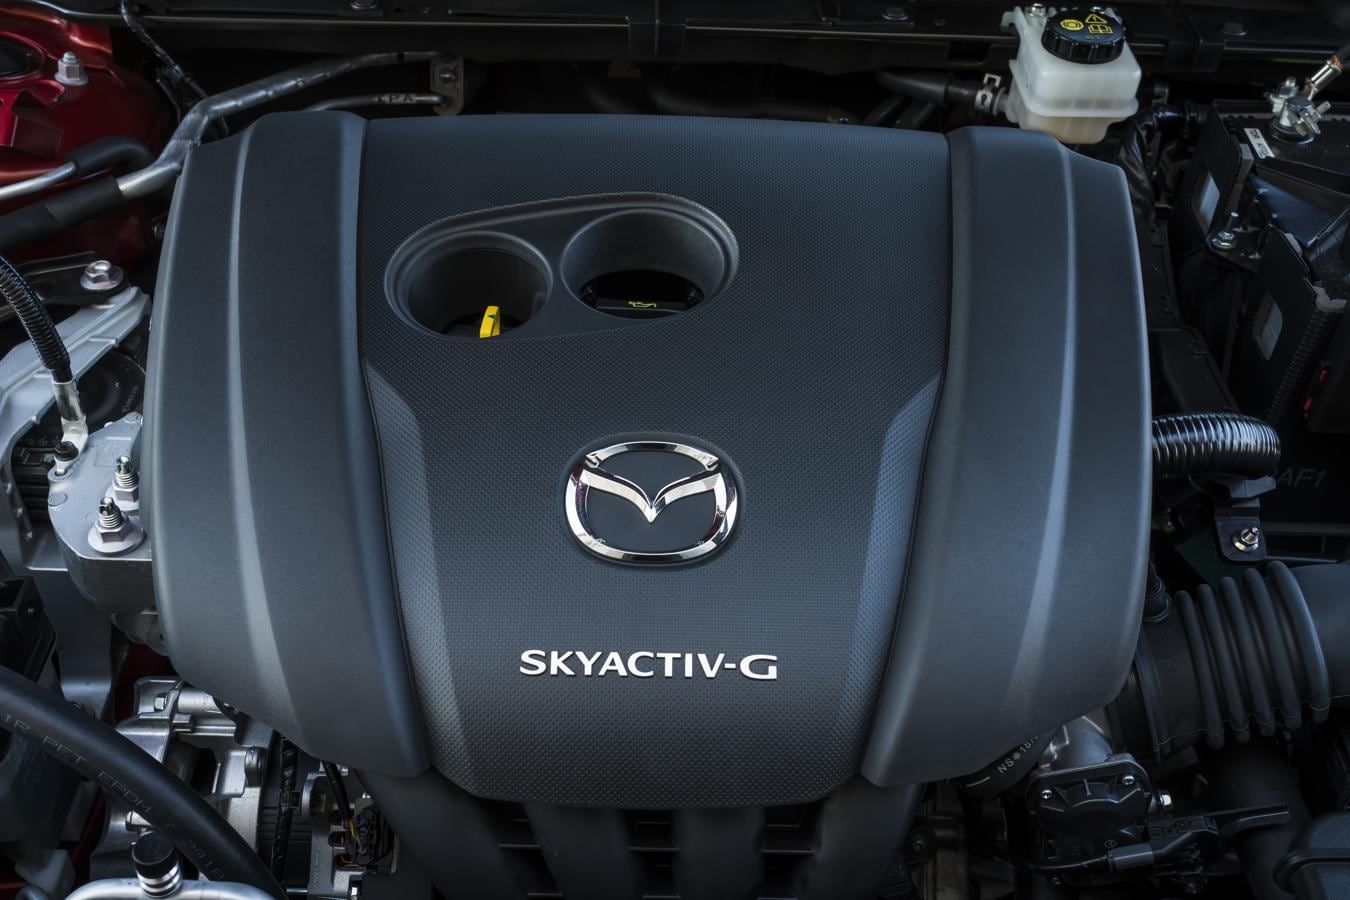 Fotogalería: elegancia y artesanía en el nuevo Mazda3 2019